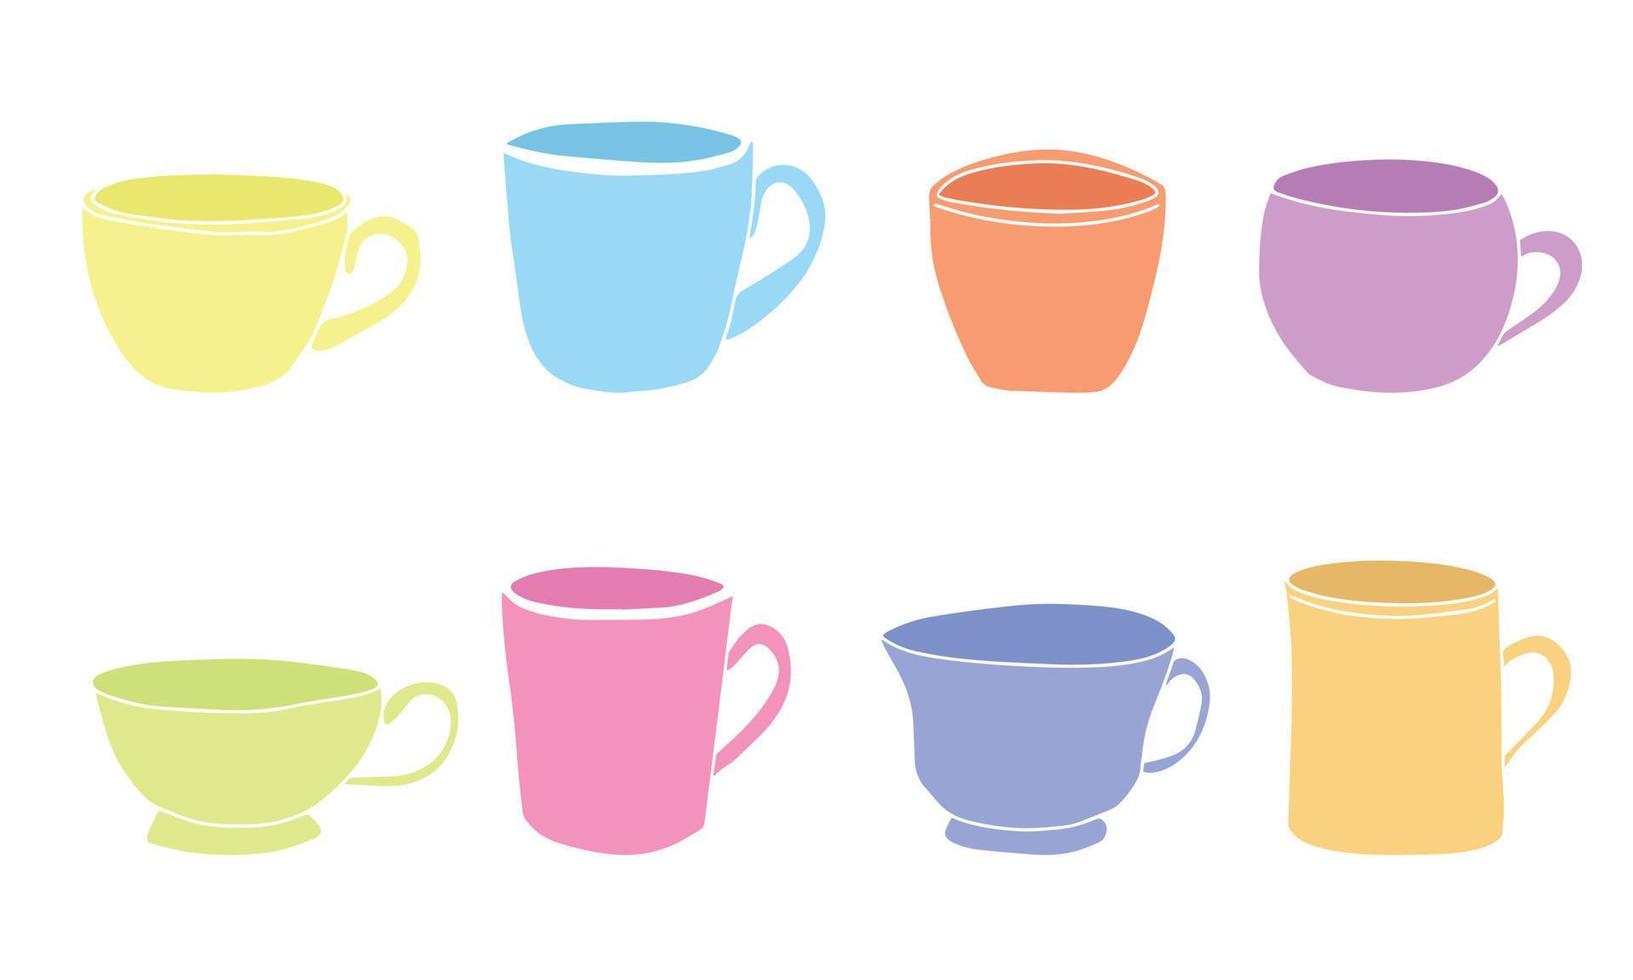 conjunto de iconos de taza de café. tazas de colección de té de café. icono de bebida caliente. vaso desechable. estilo plano - vector de acciones.